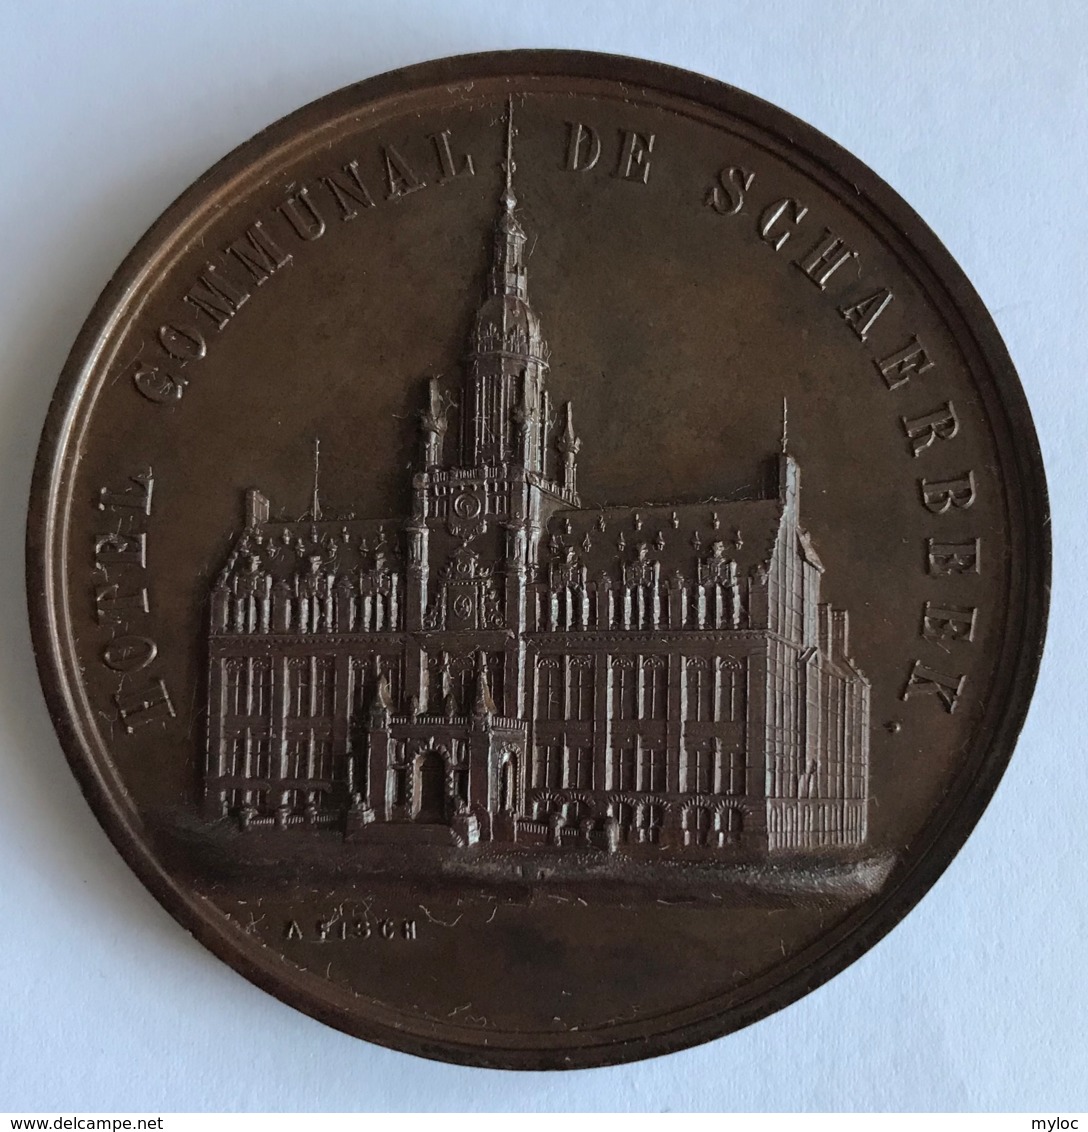 Médaille. Fêtes Communales De Schaerbeek 1890. A. Fisch. Diam. 64mm - Professionnels / De Société